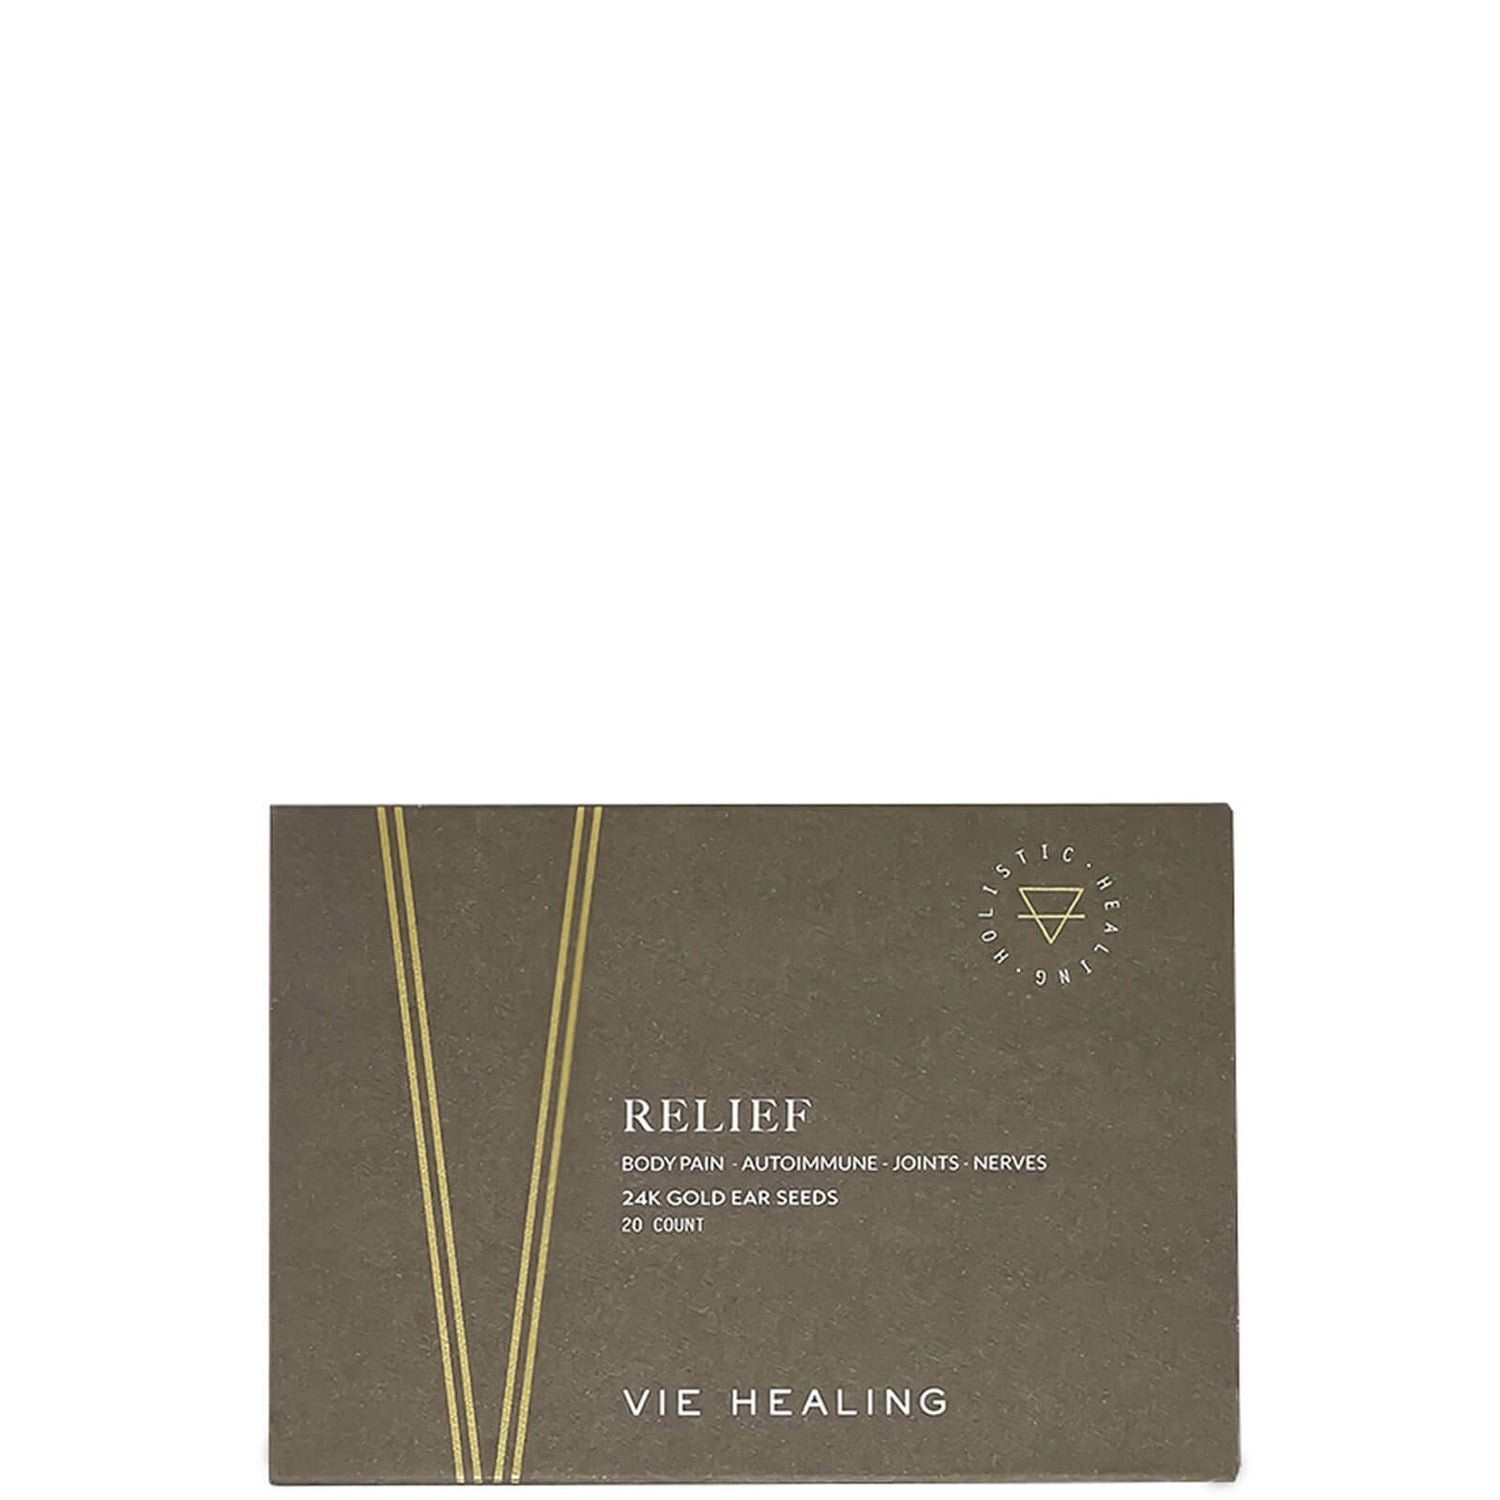 Vie Healing RELIEF 24k Gold Ear Seeds